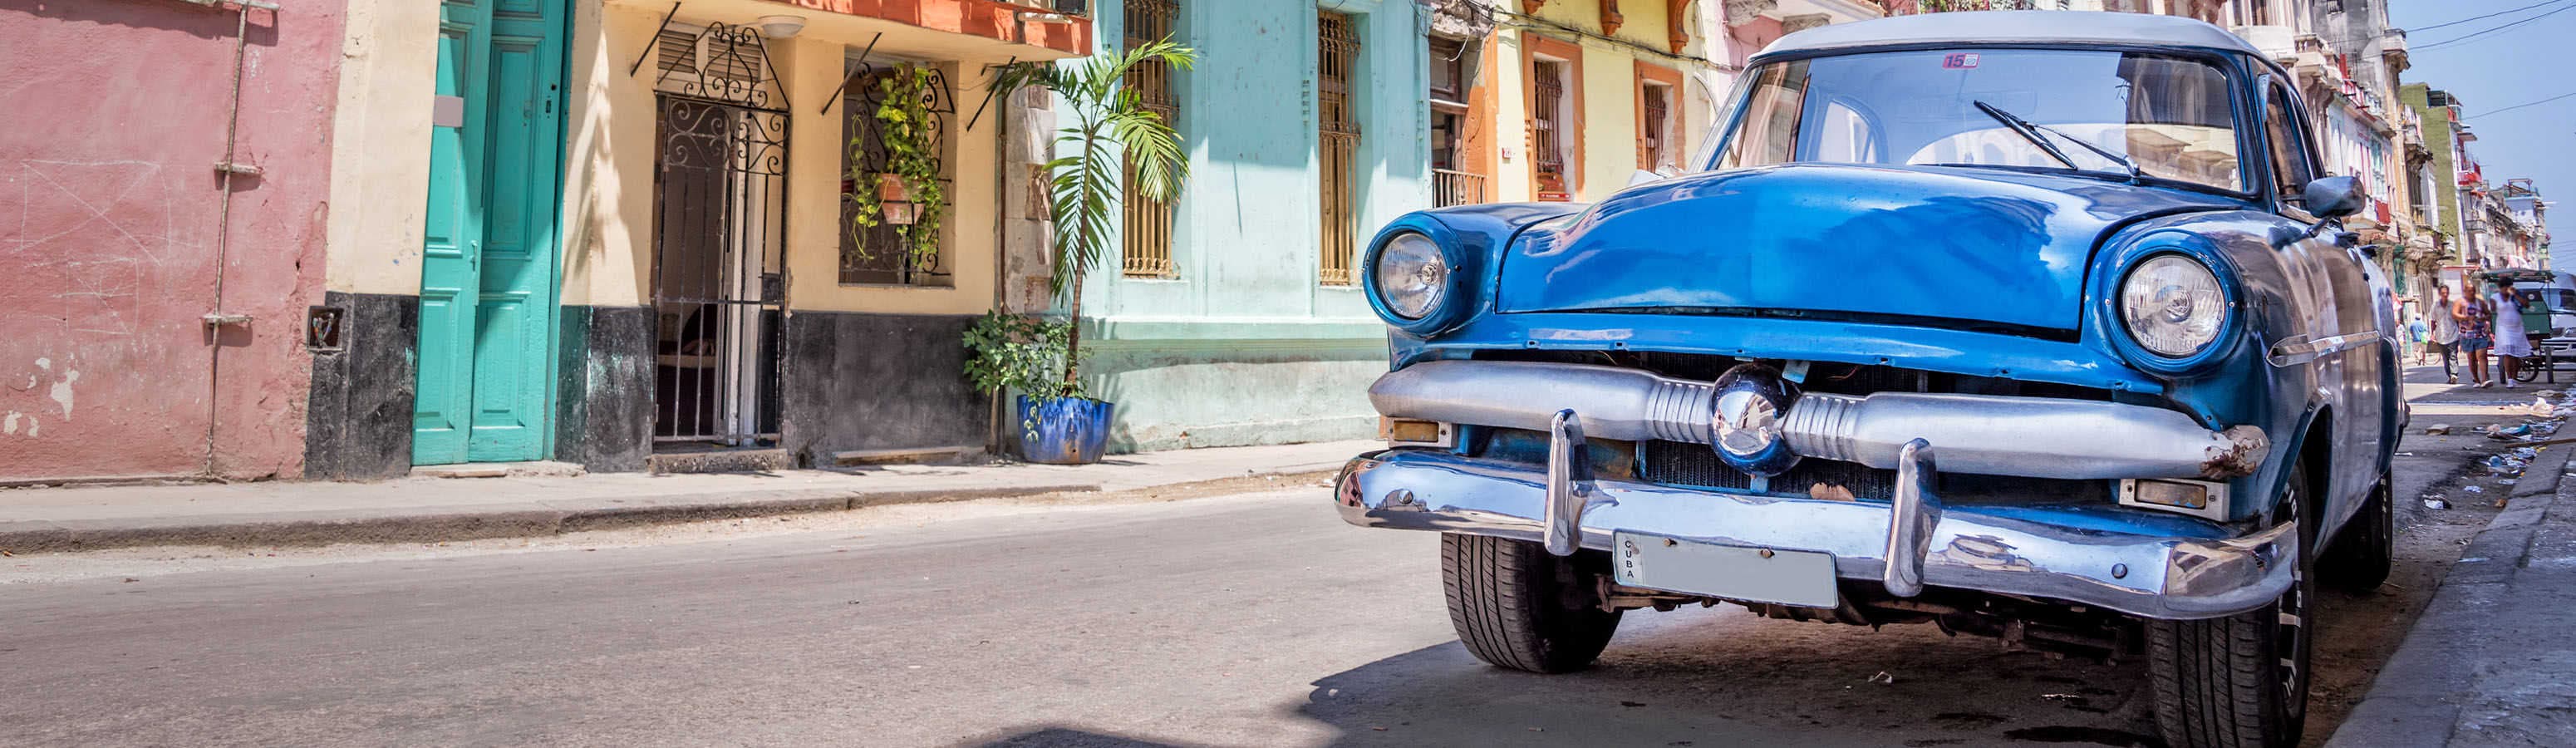 Cuba - viaggio per veterani